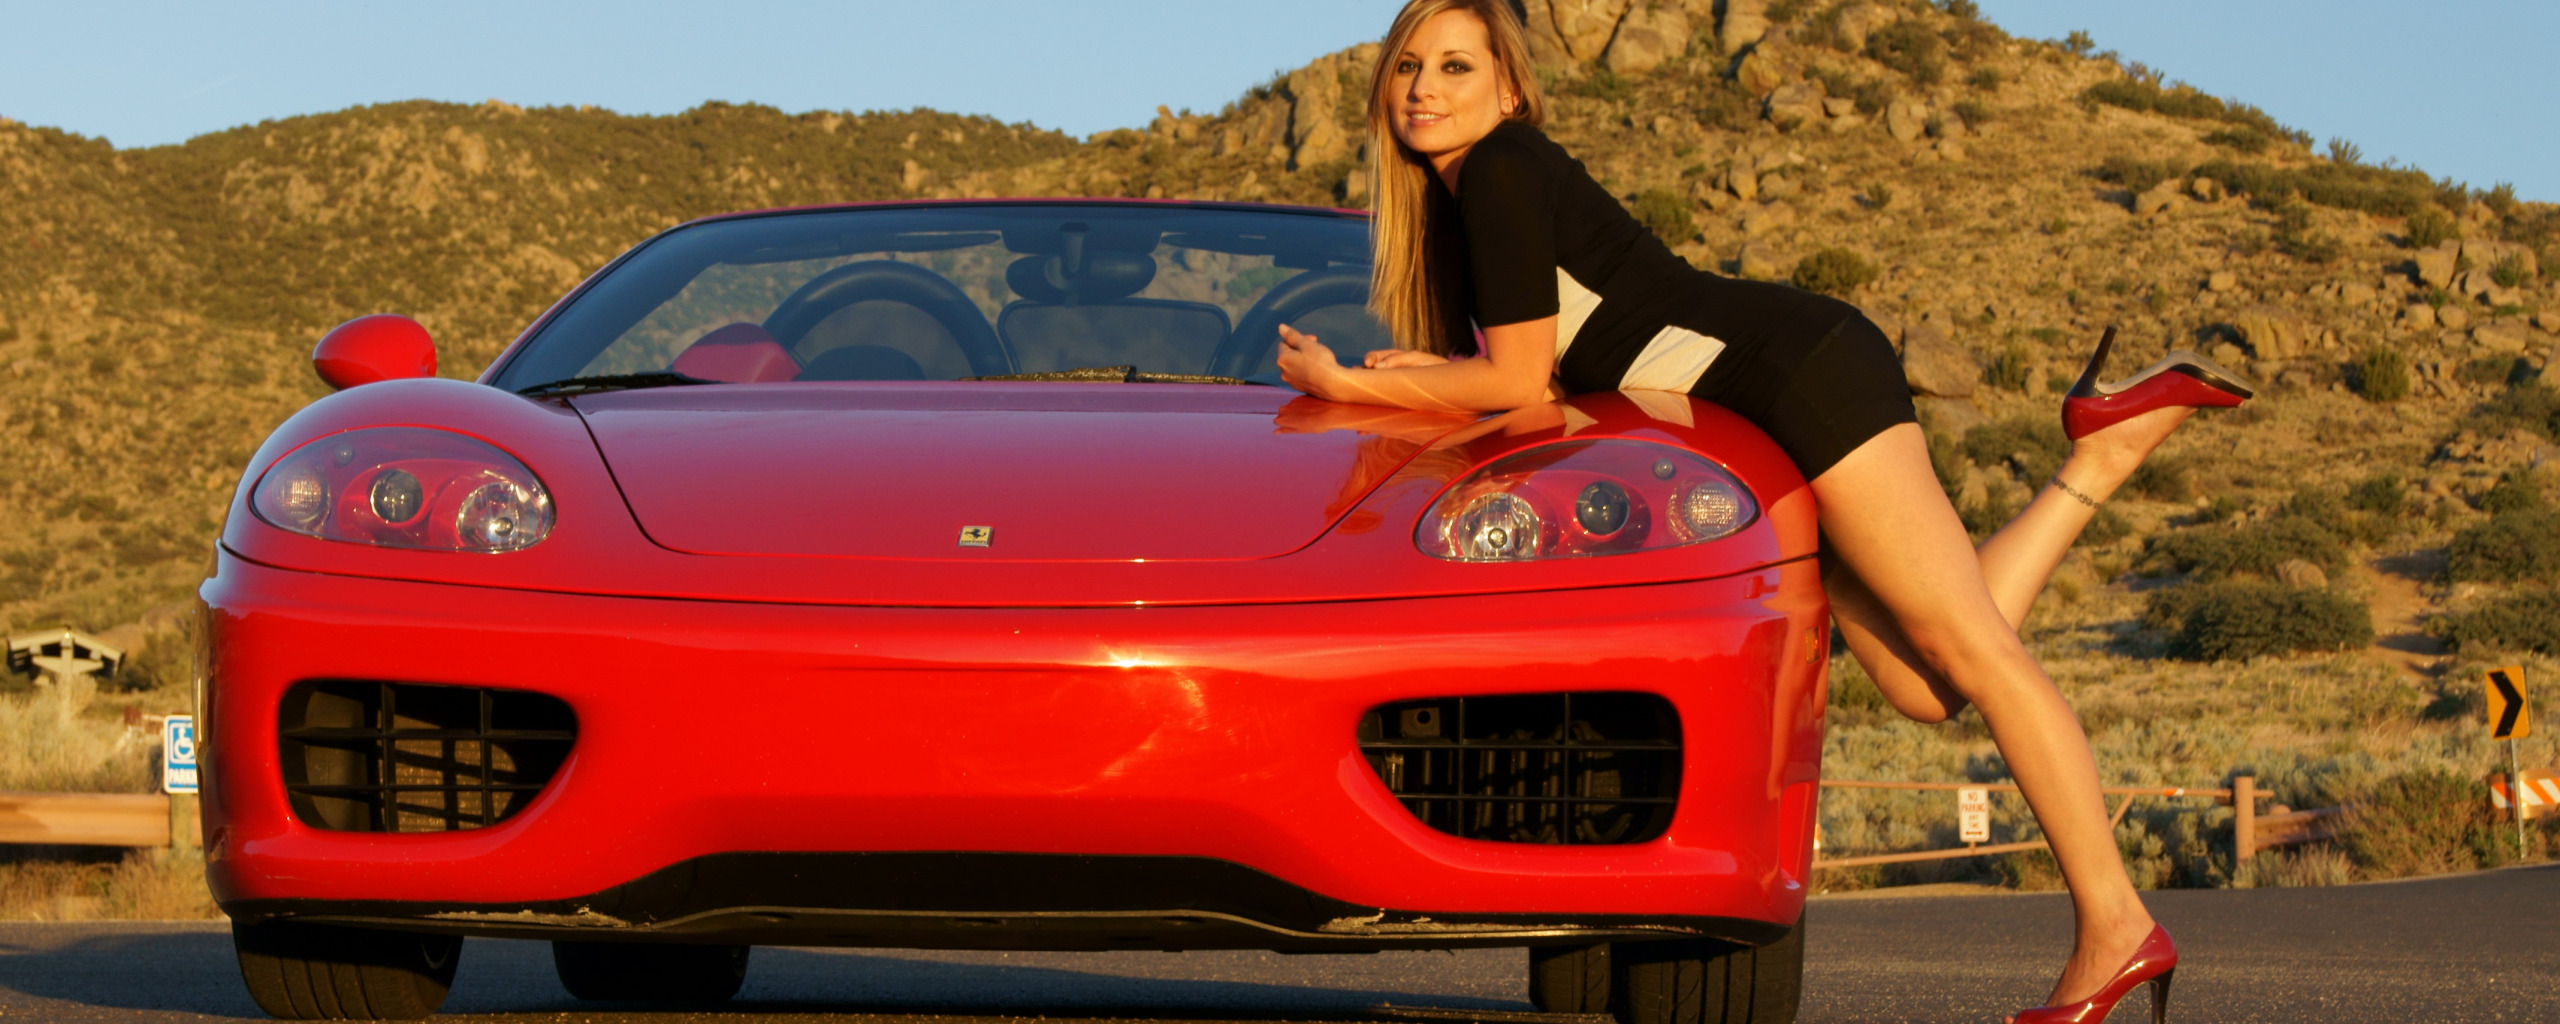 взгляд, девушка, гора, Девушки, Ferrari, красный авто. 